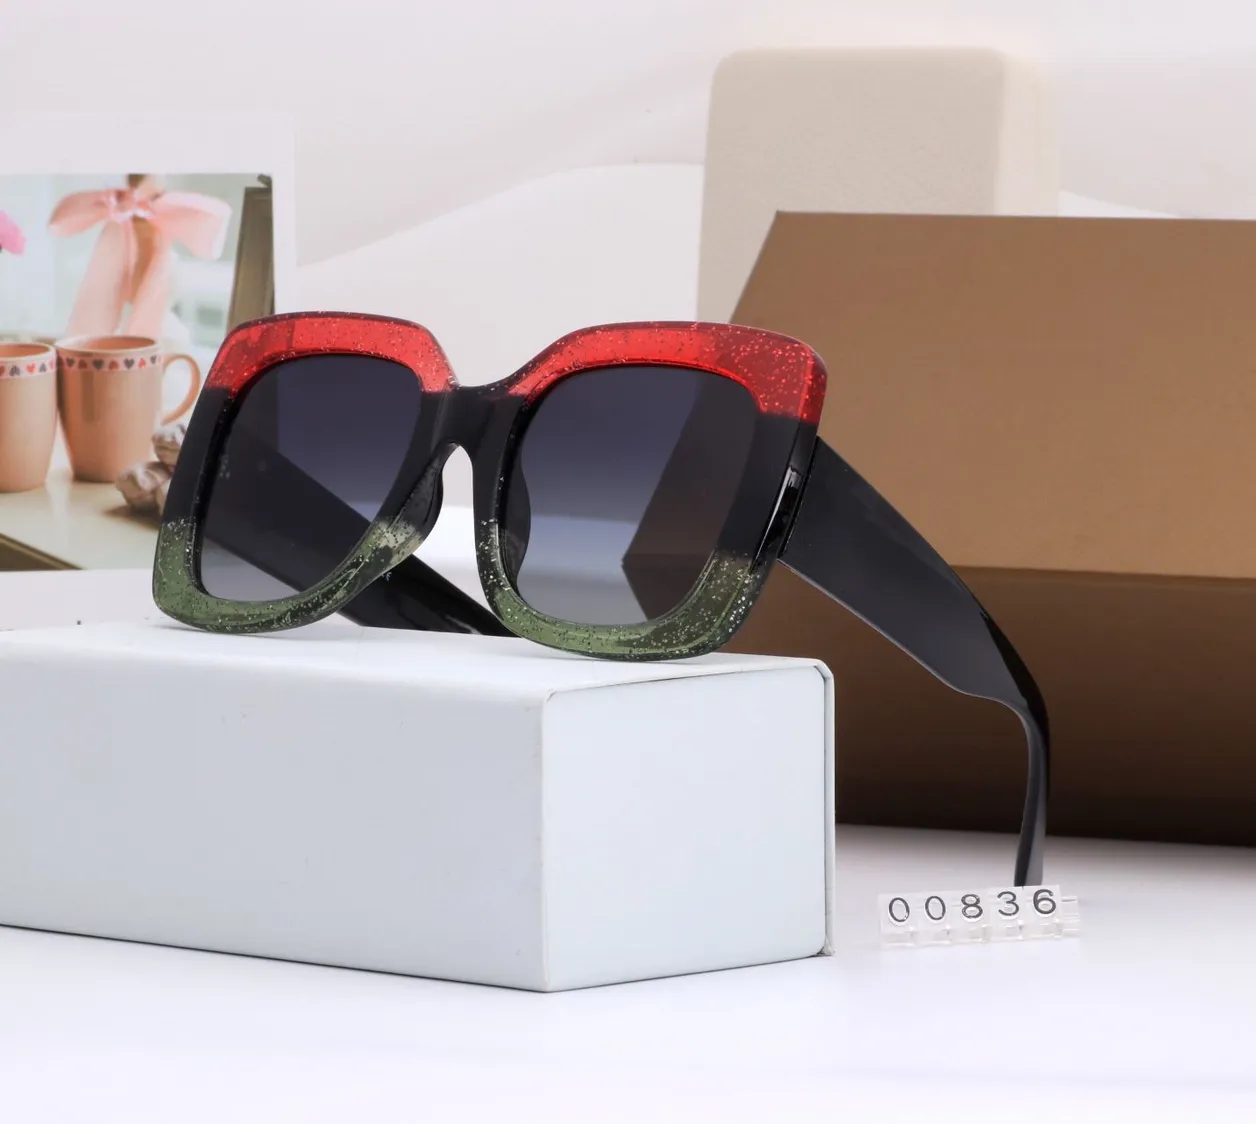 Las mejores gafas de sol de lujo para mujer Classic Oversize Square 0083S 008 Black Frame con Gray Gradient Lens Gafas de sol